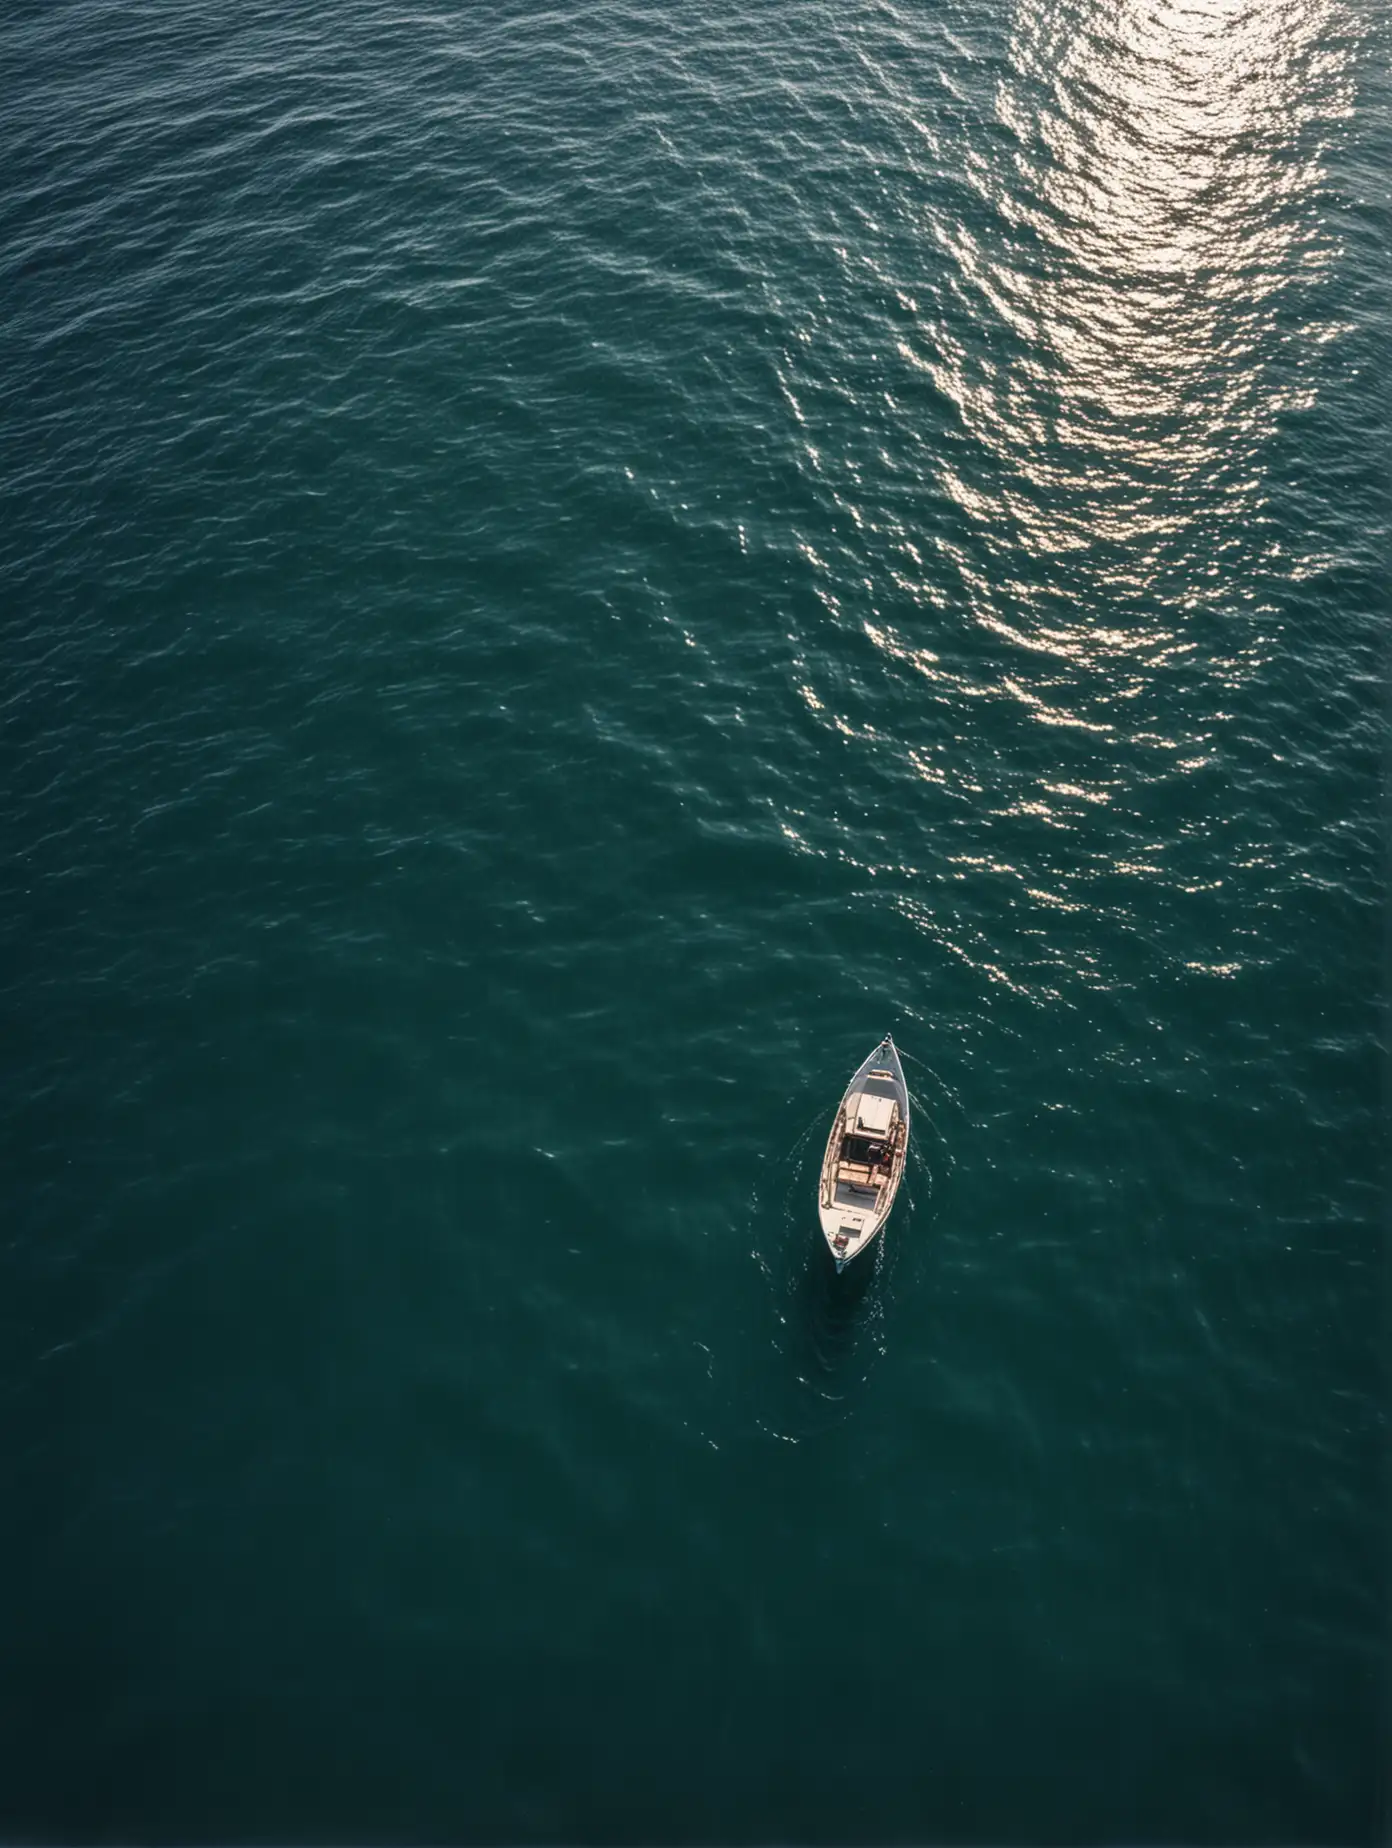 Lonely Boat Adrift on Vast Open Sea